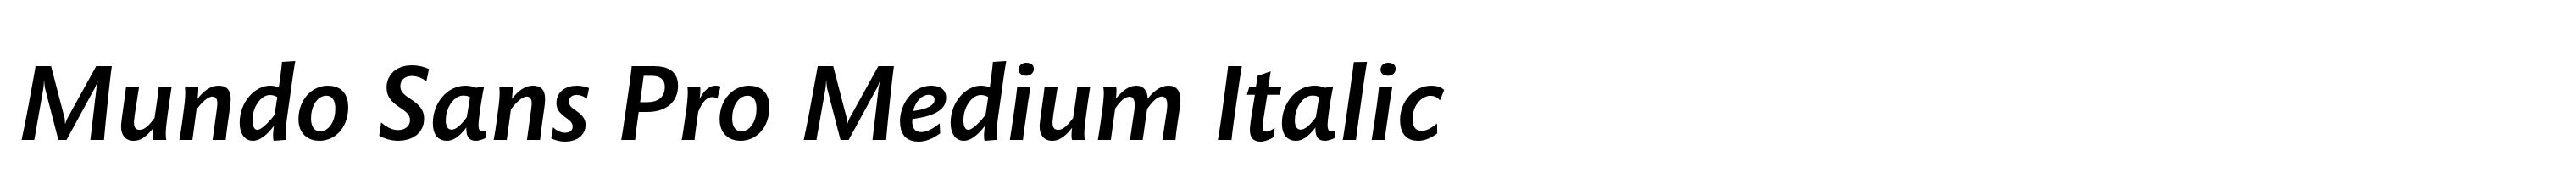 Mundo Sans Pro Medium Italic